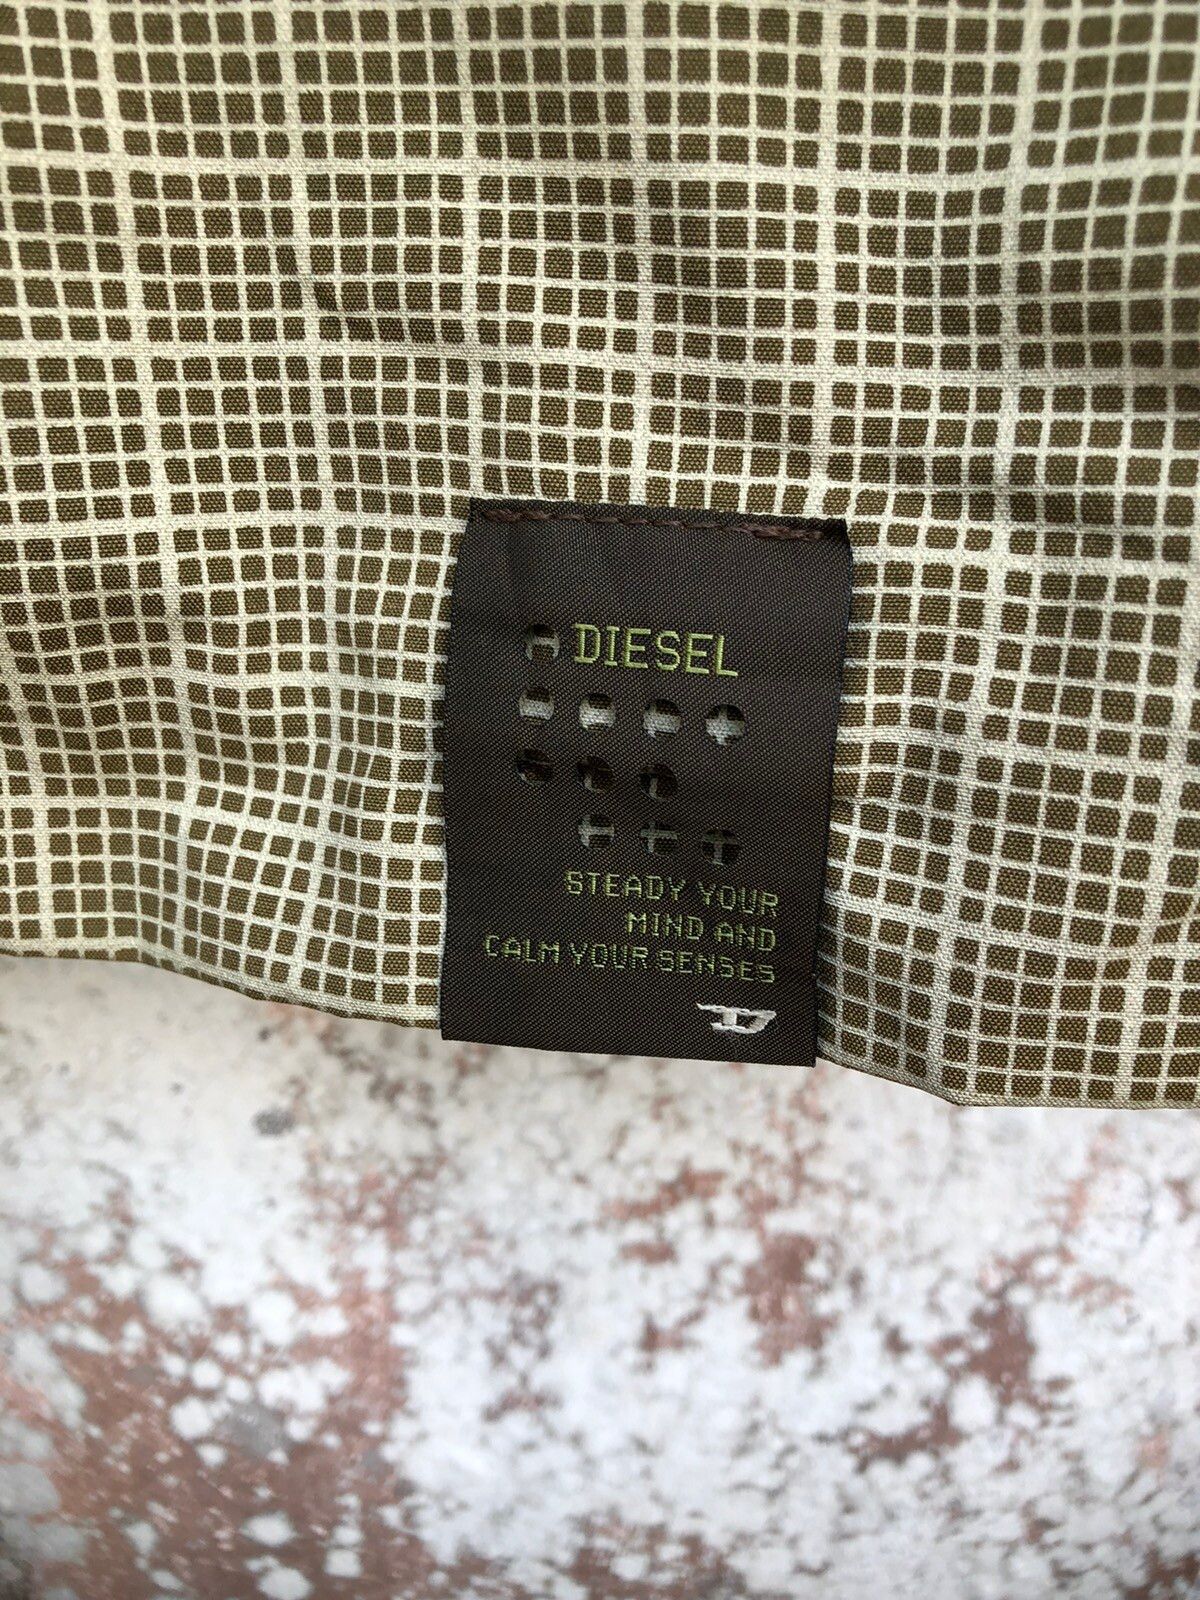 Diesel Cotton Nylon Light Jacket - 7